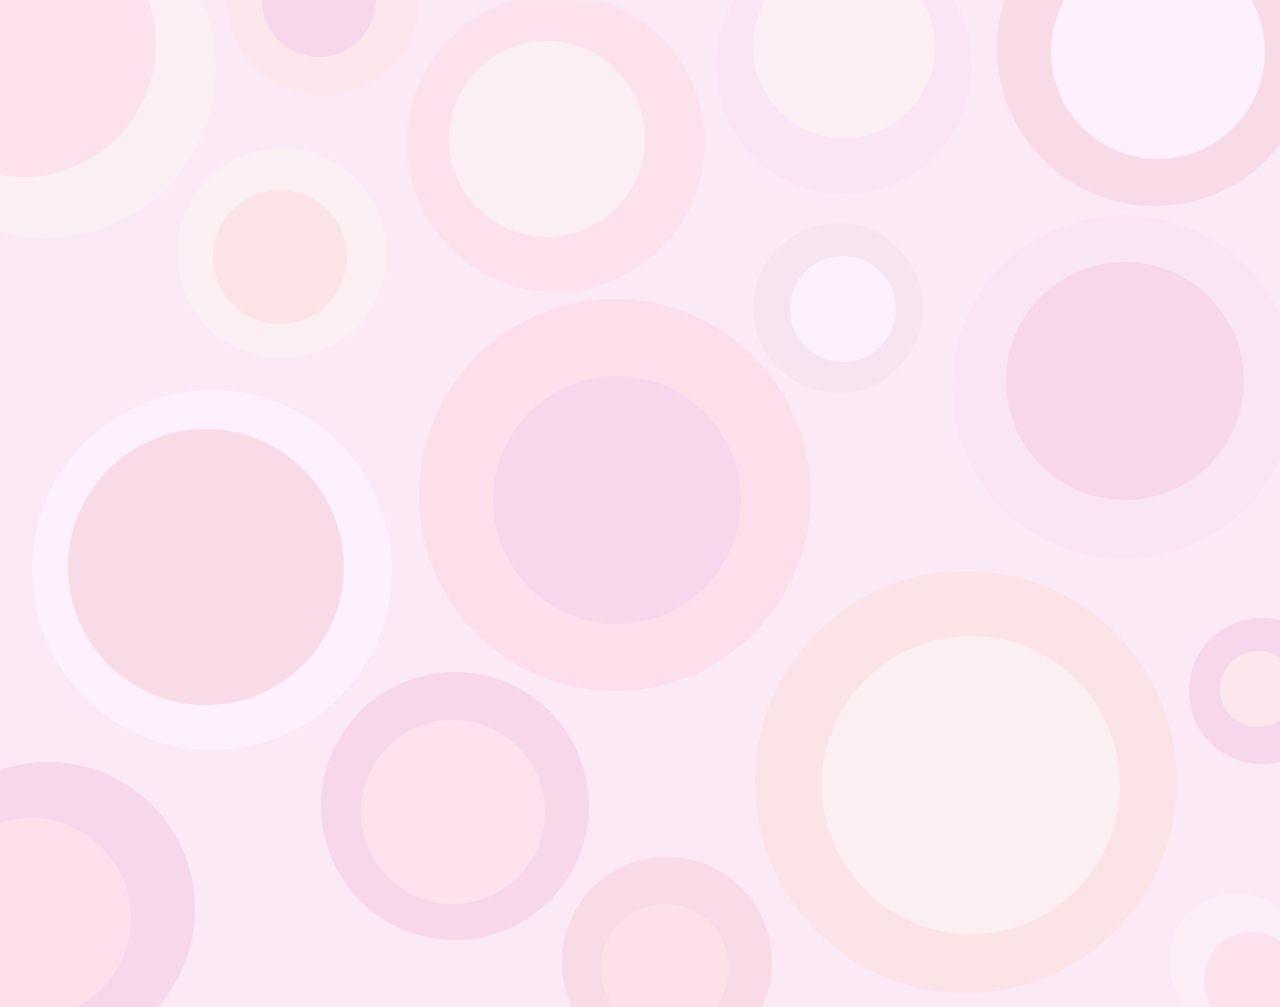 Wallpaper For > Plain Light Pink Background For Twitter